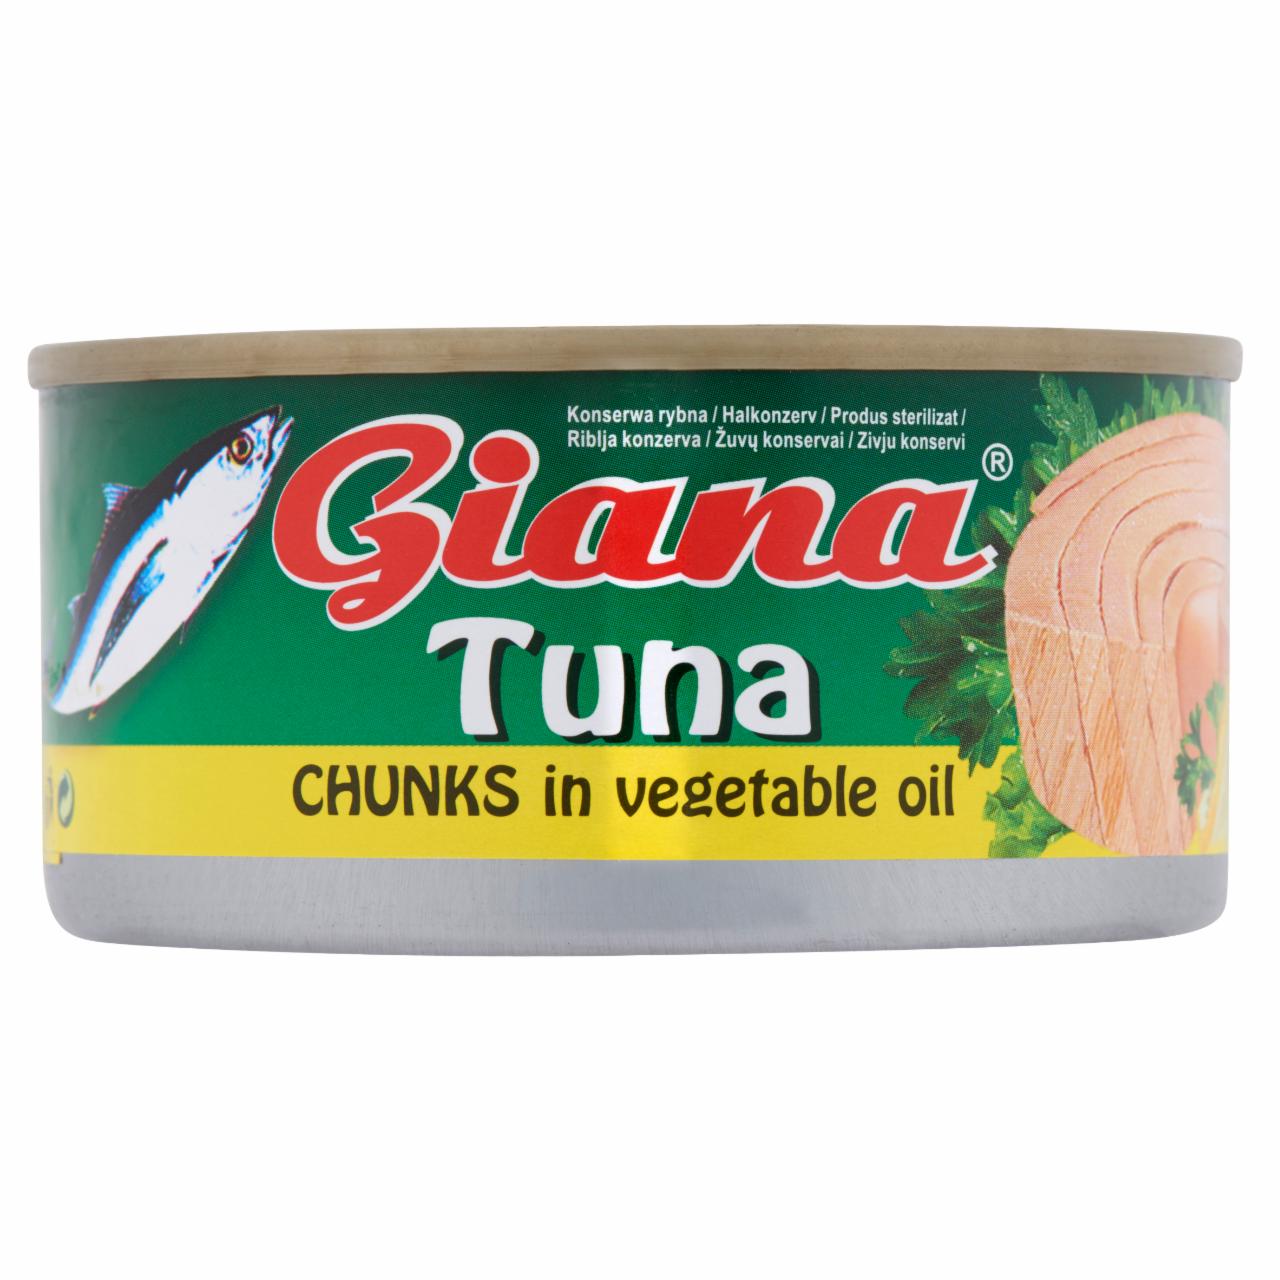 Képek - Giana tonhaldarabok növényi olajban és sós lében 185 g